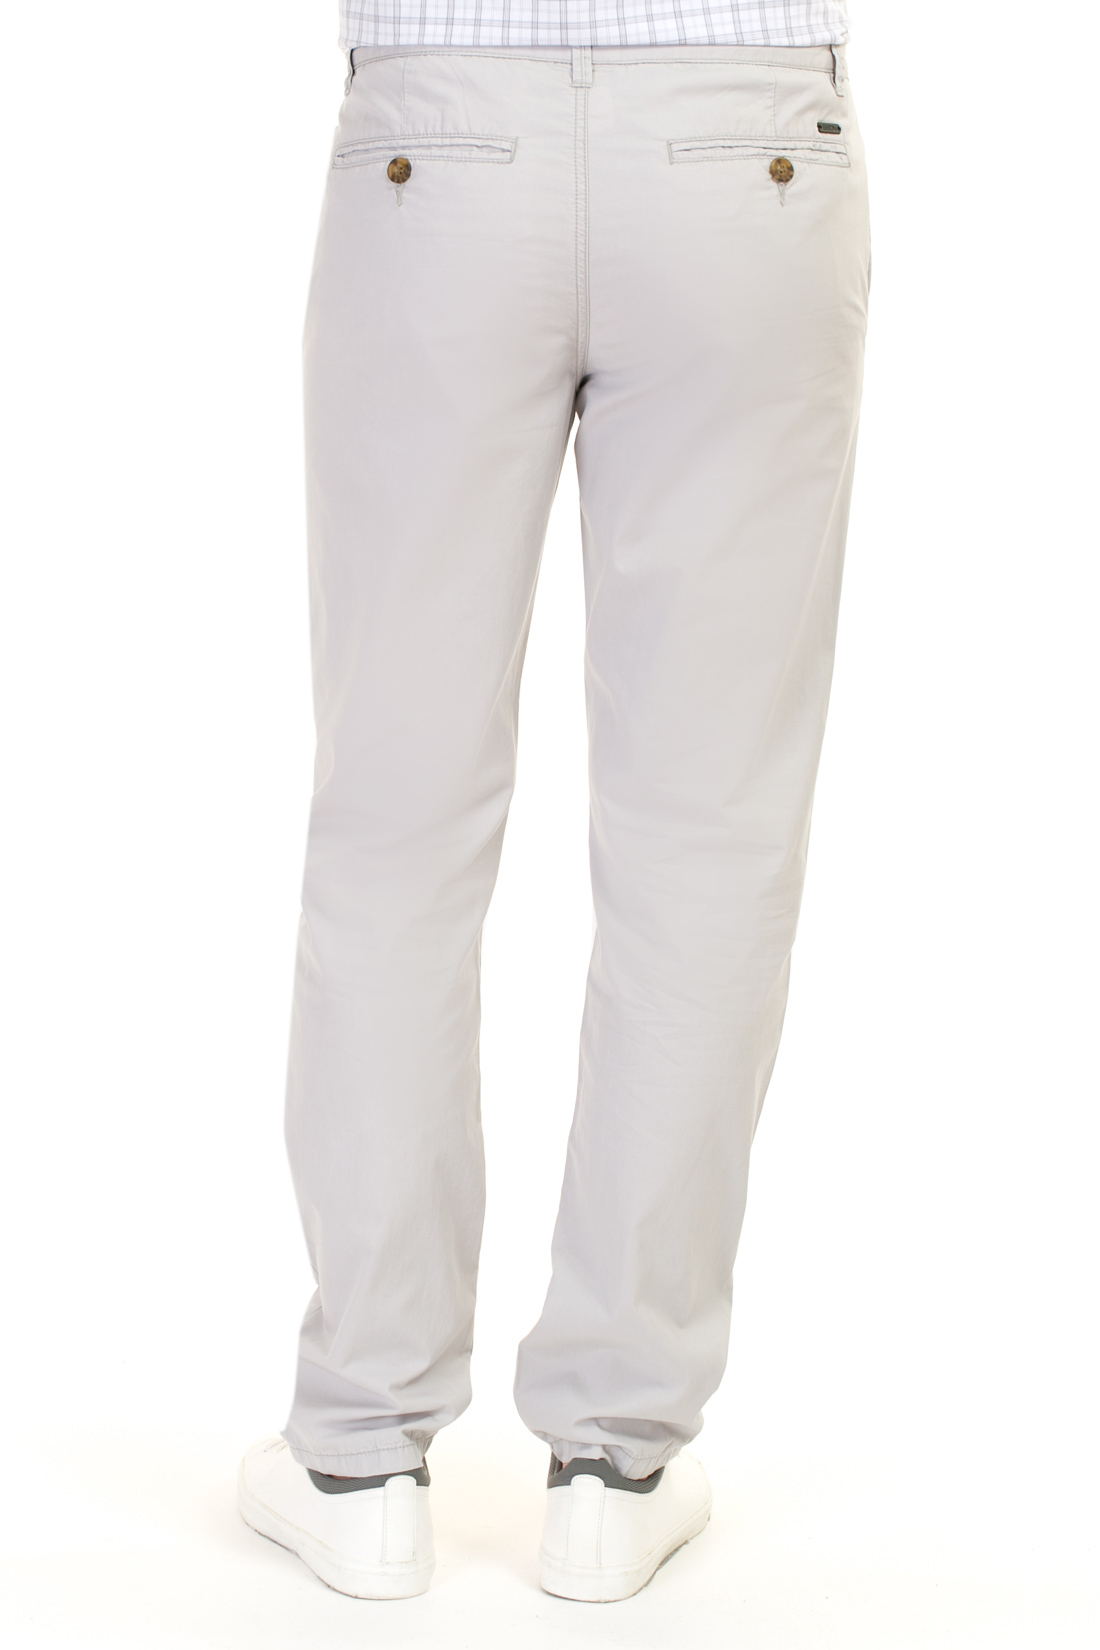 Хлопковые брюки-чиносы (арт. baon B797010), размер 3XL, цвет белый Хлопковые брюки-чиносы (арт. baon B797010) - фото 2